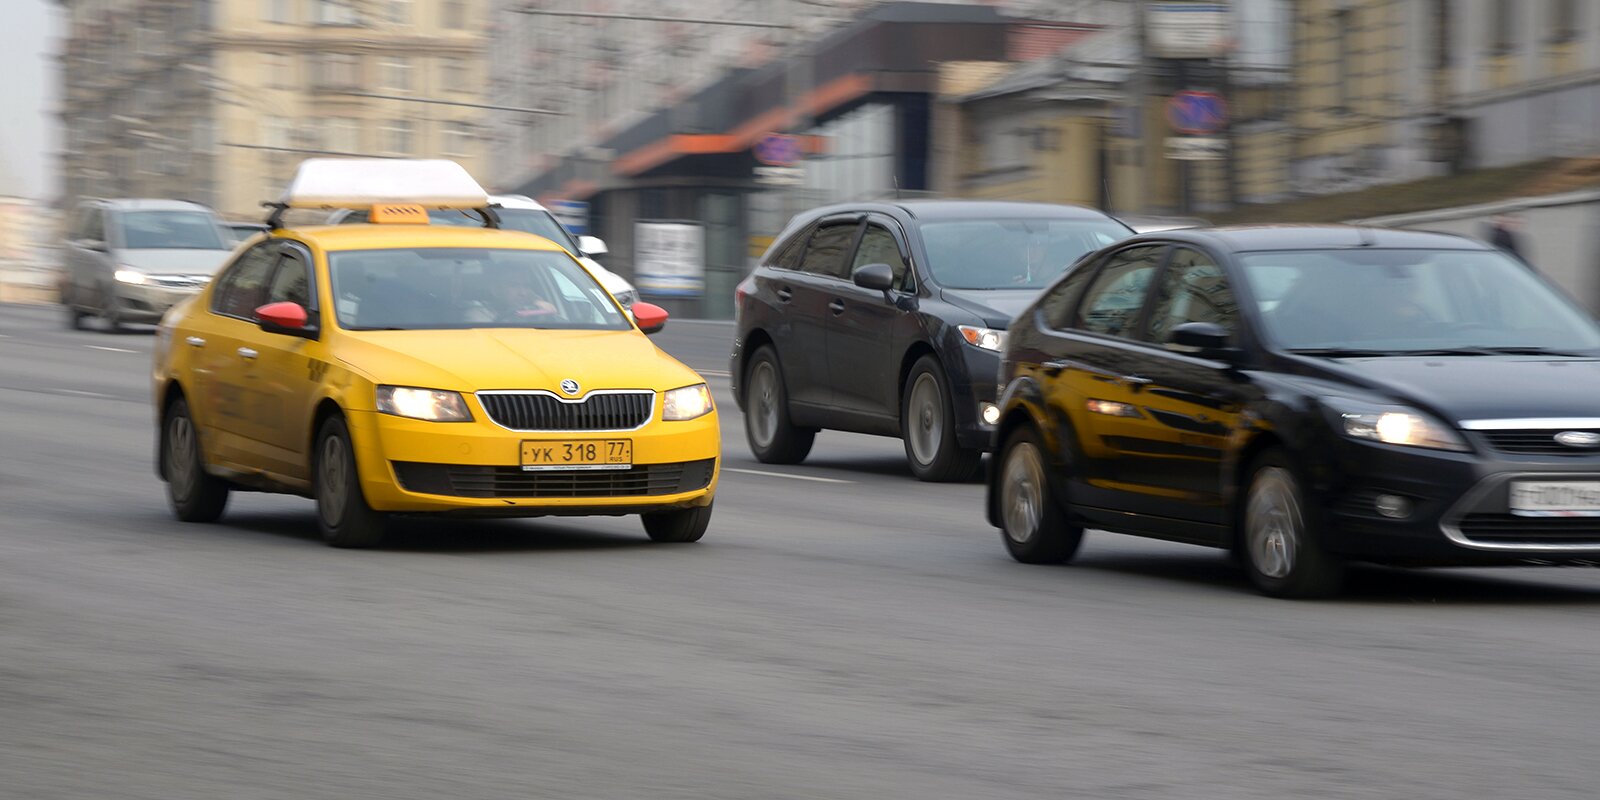 Разрешение на работу такси в столице теперь можно получить онлайн